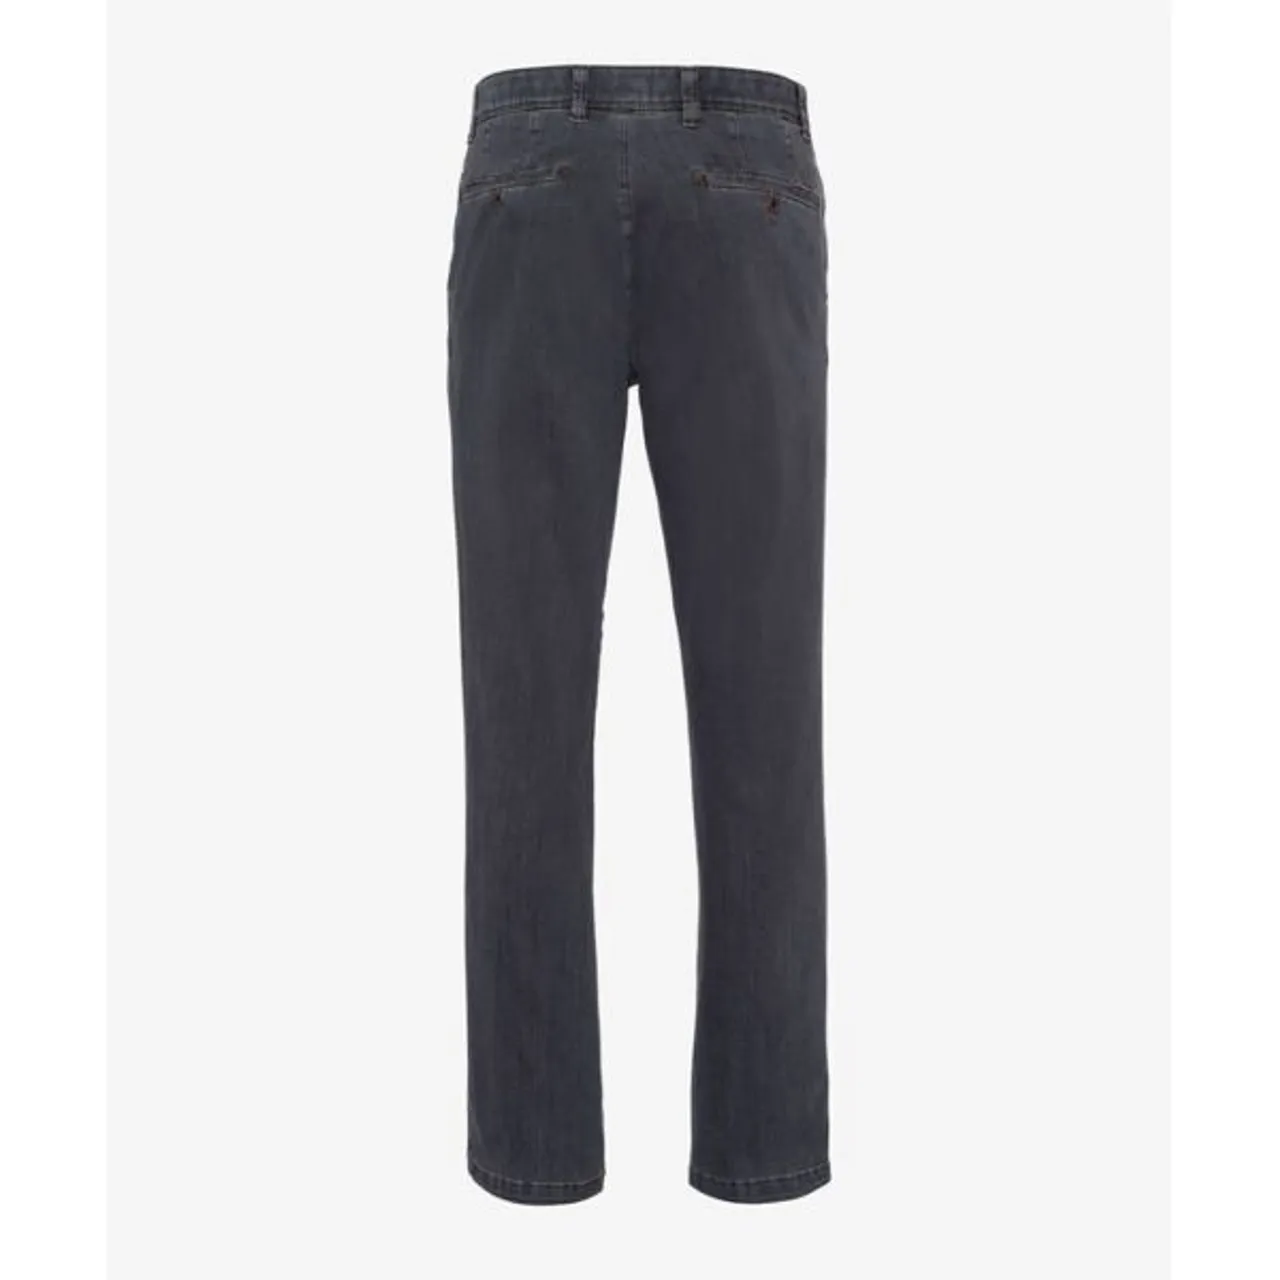 Bequeme Jeans EUREX BY BRAX "Style JIM 316" Gr. 48, Normalgrößen, grau Herren Jeans